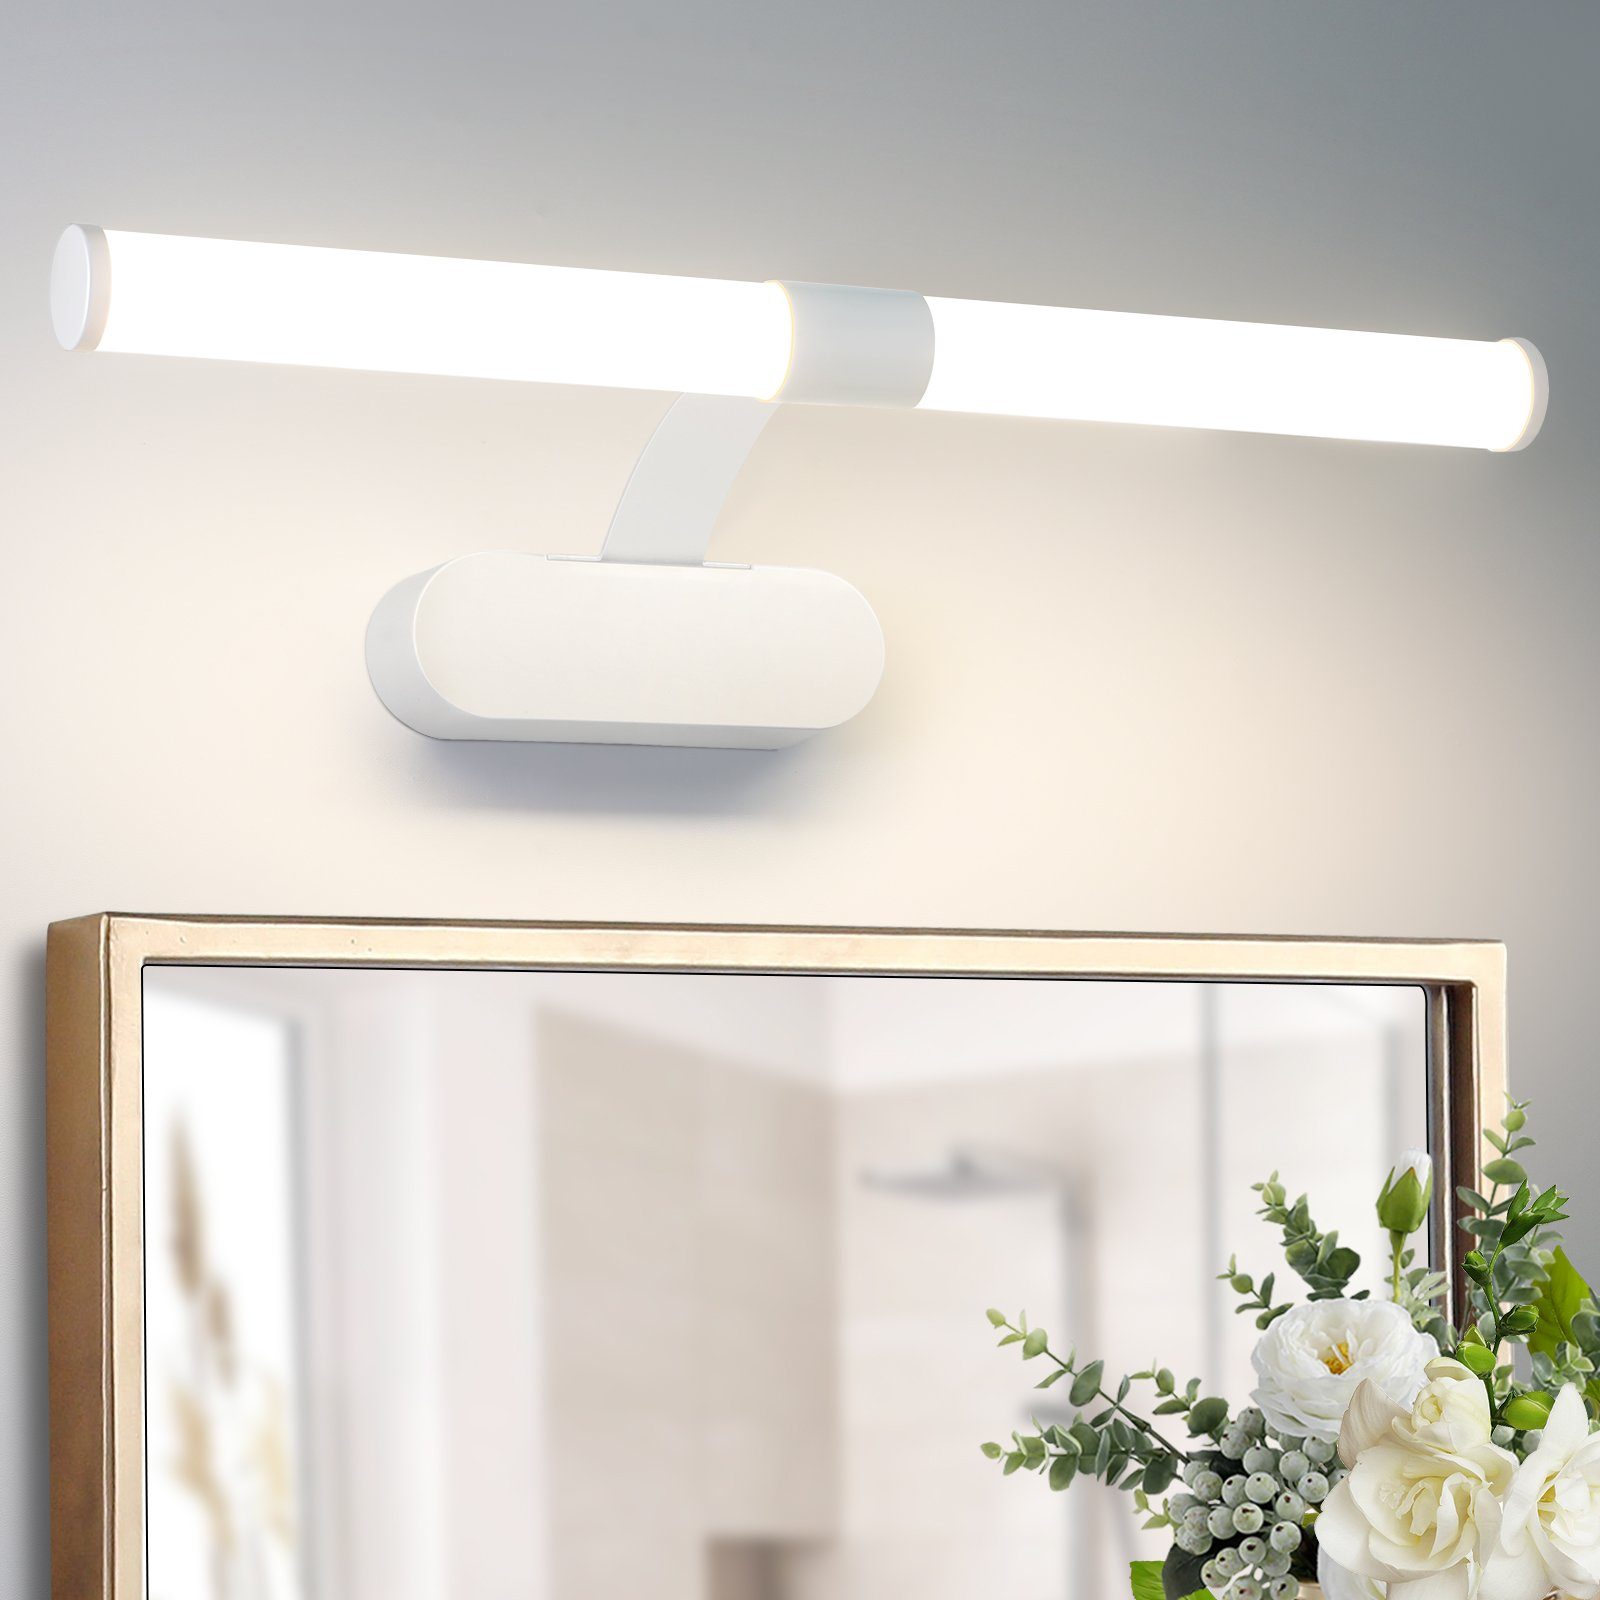 Nettlife LED Spiegelleuchte für LED Badezimmer 6W, 40cm fest Schwarz Badleuchte Bad Küche Keller Badschrank, Wandlampe Badlampe, integriert, Neutralweiß, IP44, Wasserdicht Wandleuchte Spiegellampe